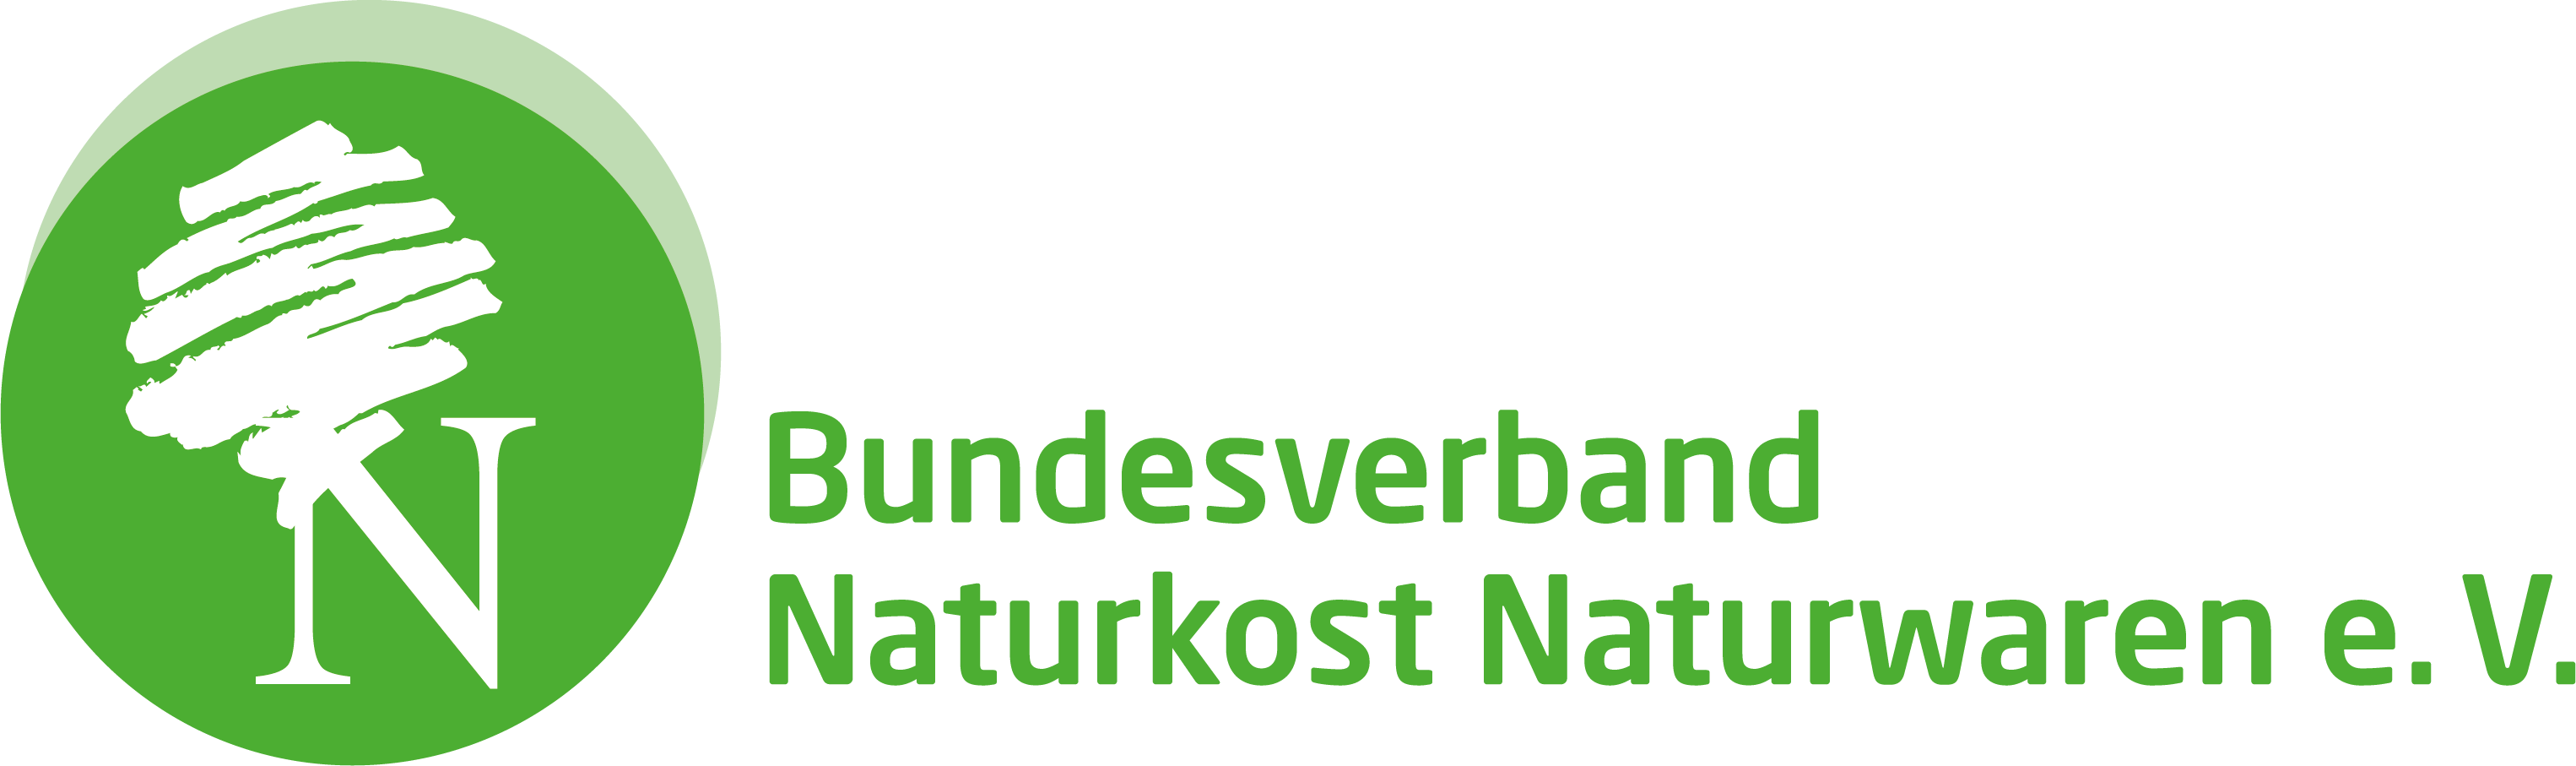 Bundesverband Naturkost Naturwaren e.V. Logo